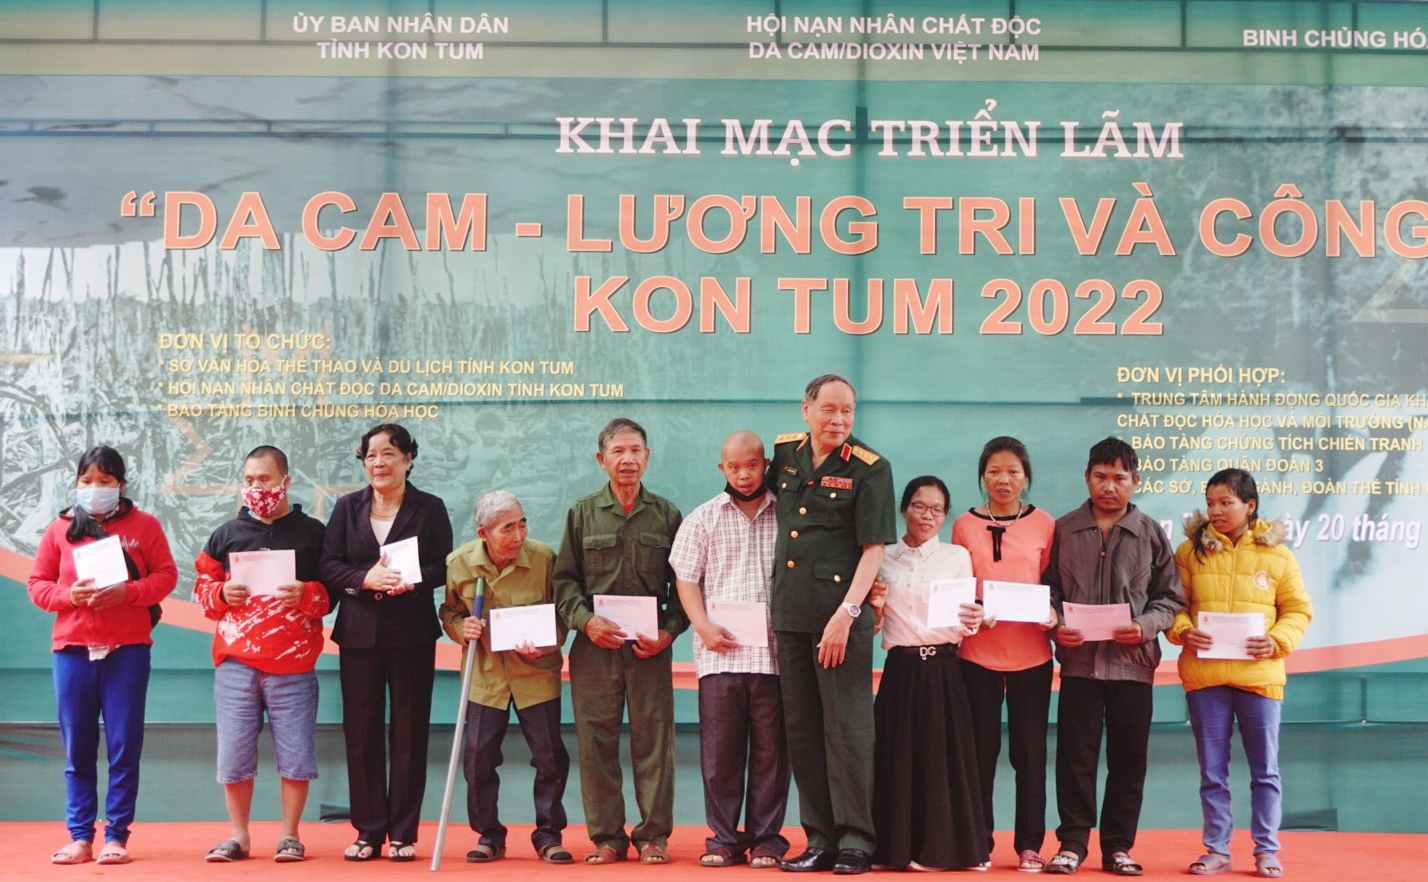 Trao quà cho các nạn nhân chất độc da cam/dioxin tỉnh Kon Tum.